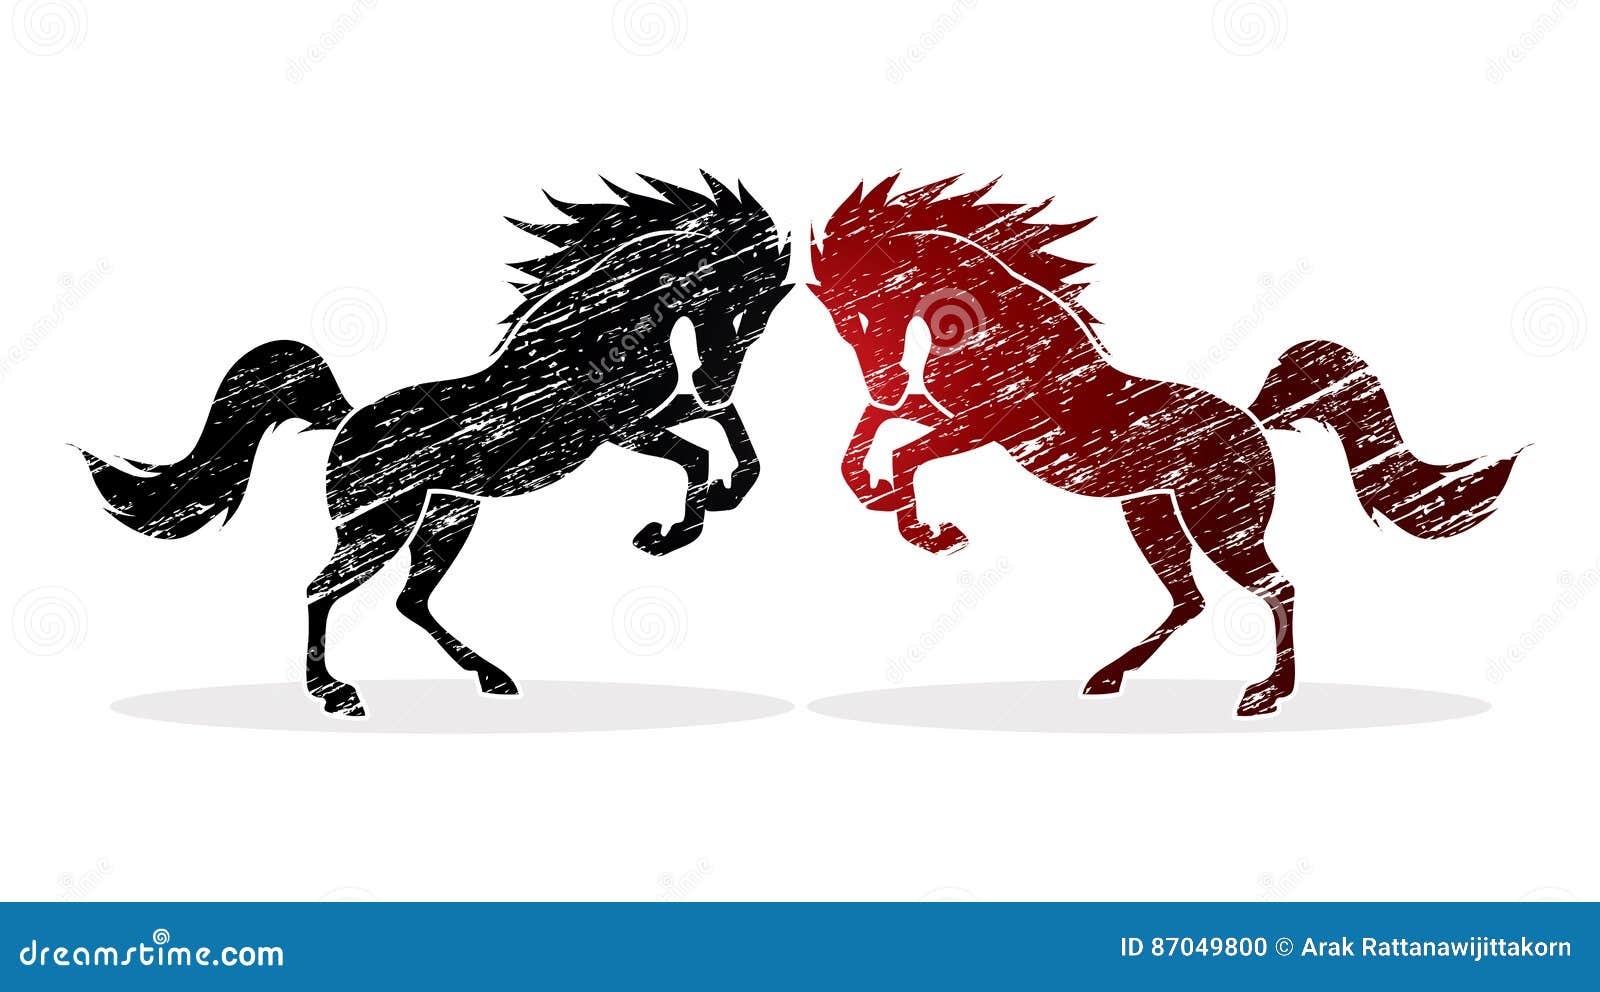 Гороскоп близнецы лошадь. Близнецы, год лошадь,. Лошади Близнецы. Лошадь в графике рисунок. Лого близнец лошадь.